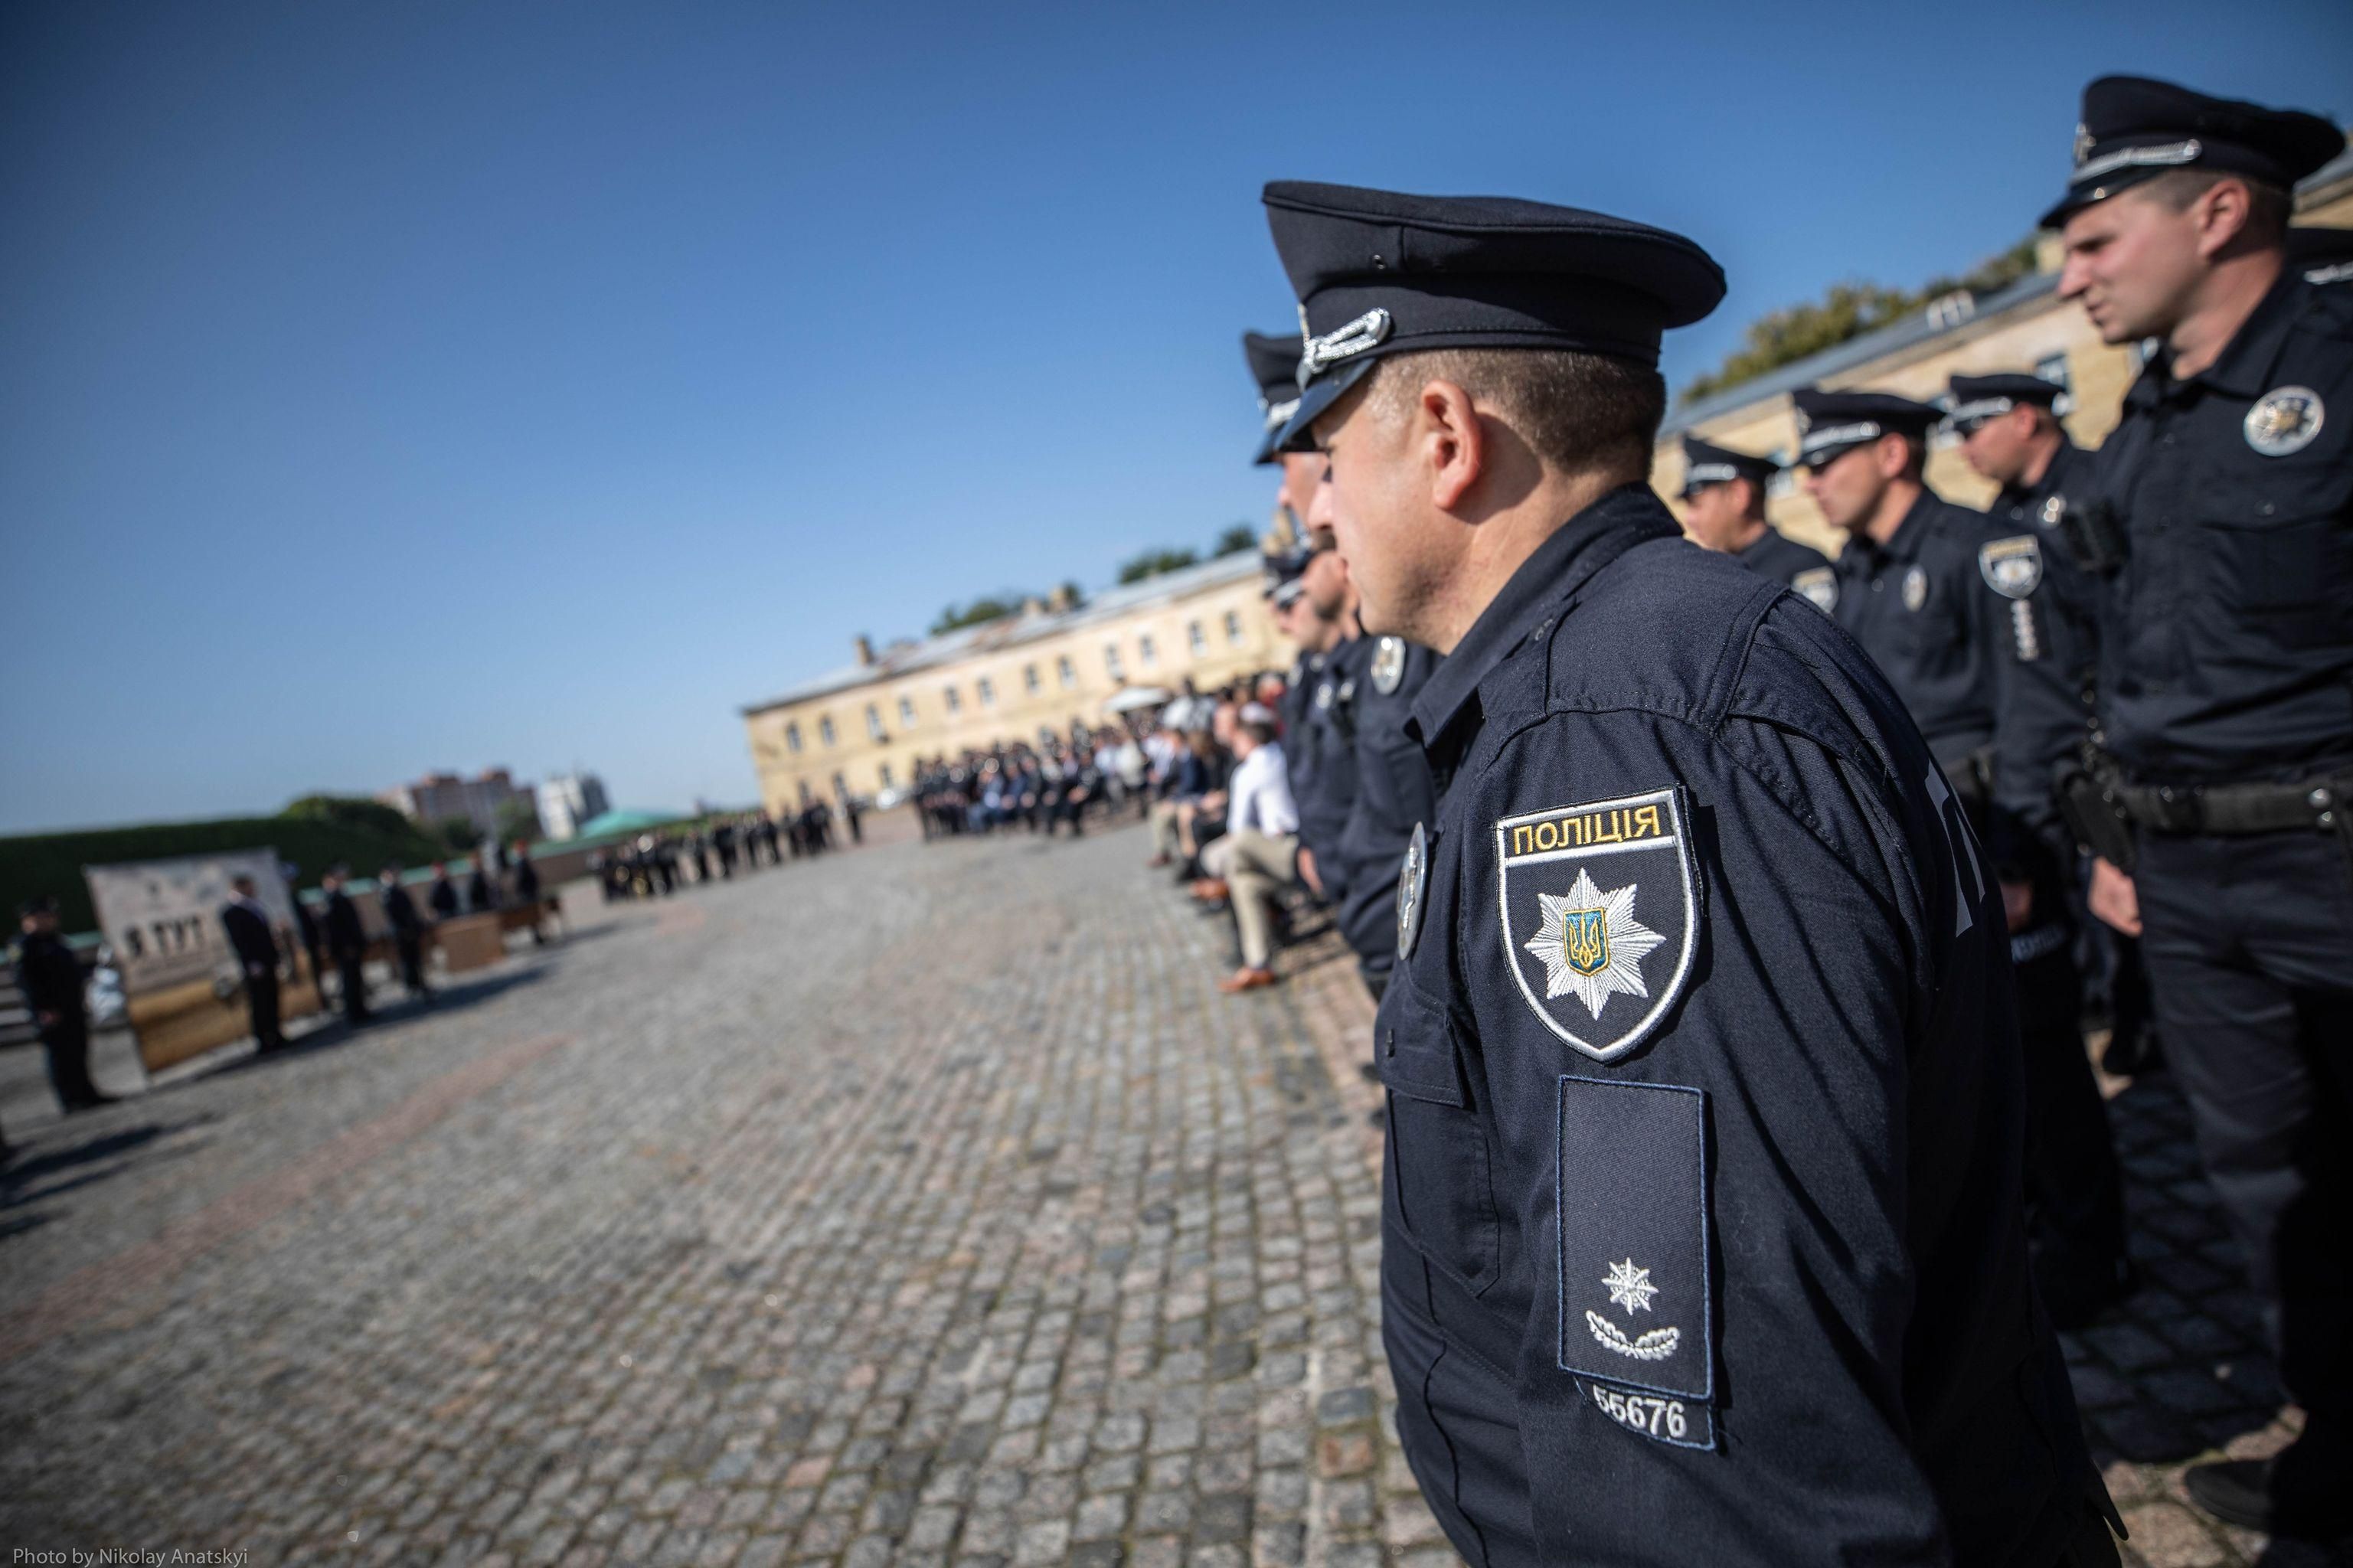 Рятувальники і поліція планують навчання цивільного населення в різних регіонах - Україна новини - 24 Канал